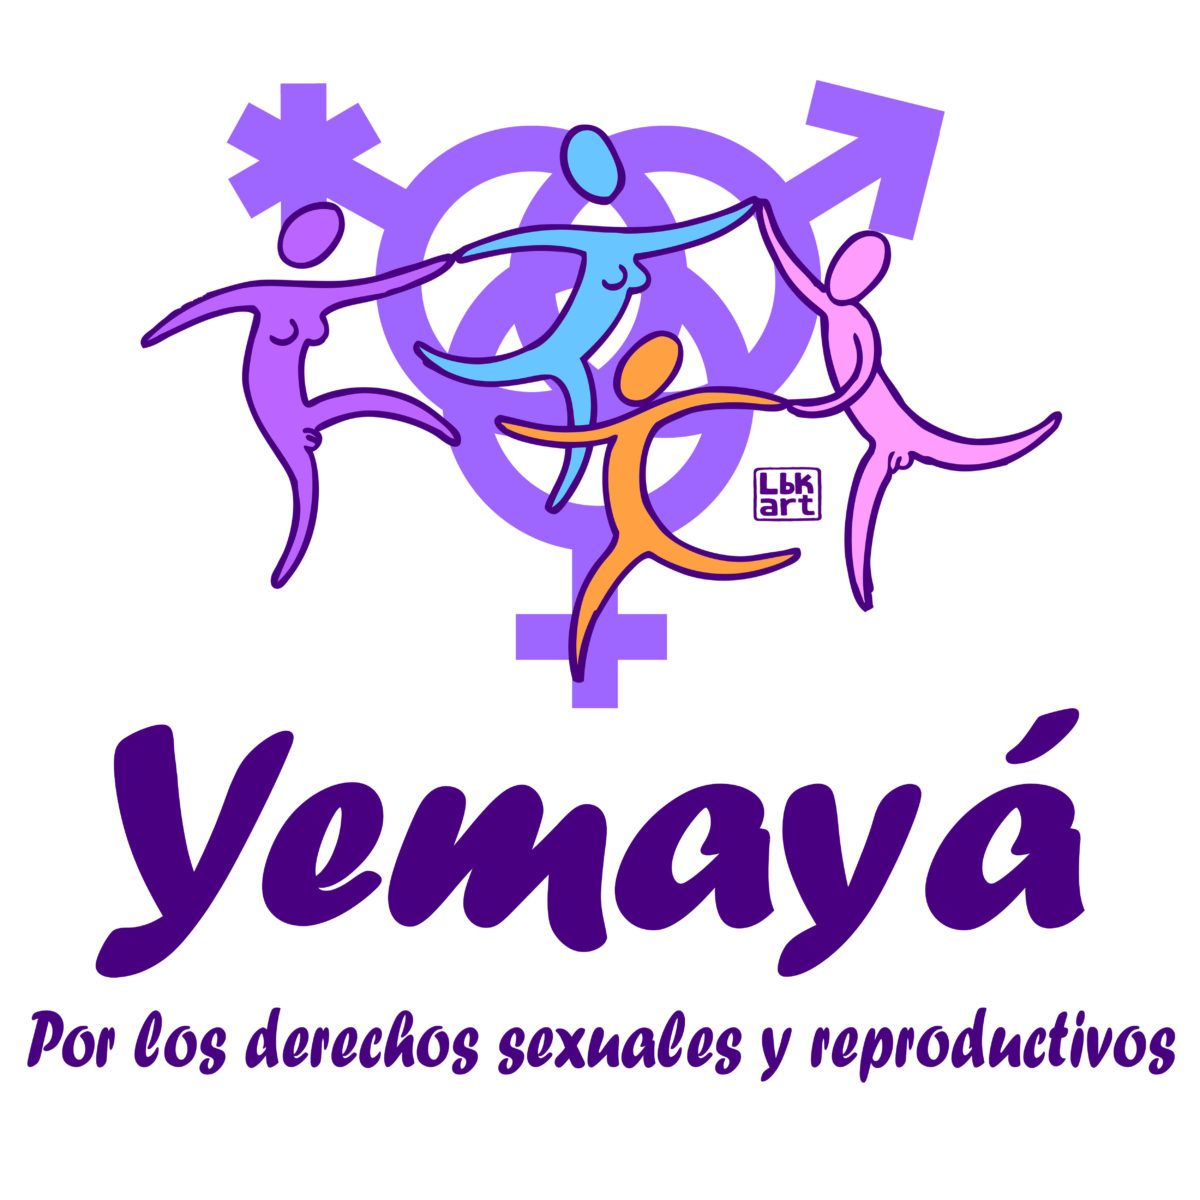 I Jornada sobre derechos sexuales y reproductivos. Organizada por la Federación Mujeres Jóvenes, Yemayá.